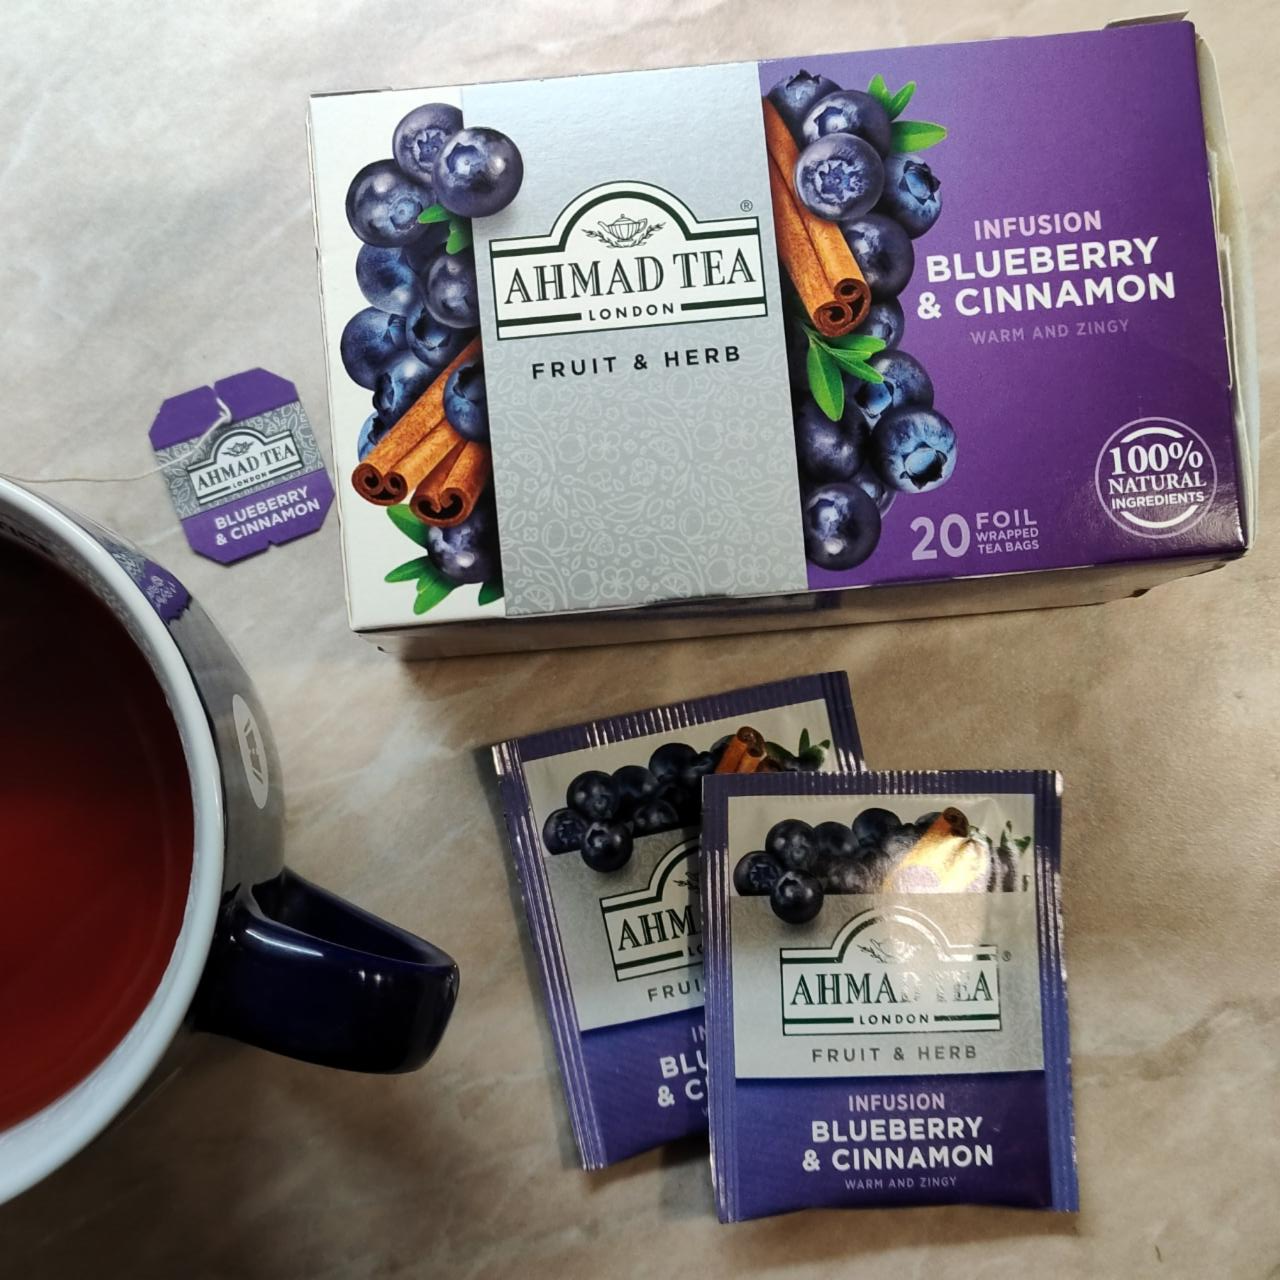 Fotografie - Infusion Blueberry & Cinnamon Ahmad Tea London